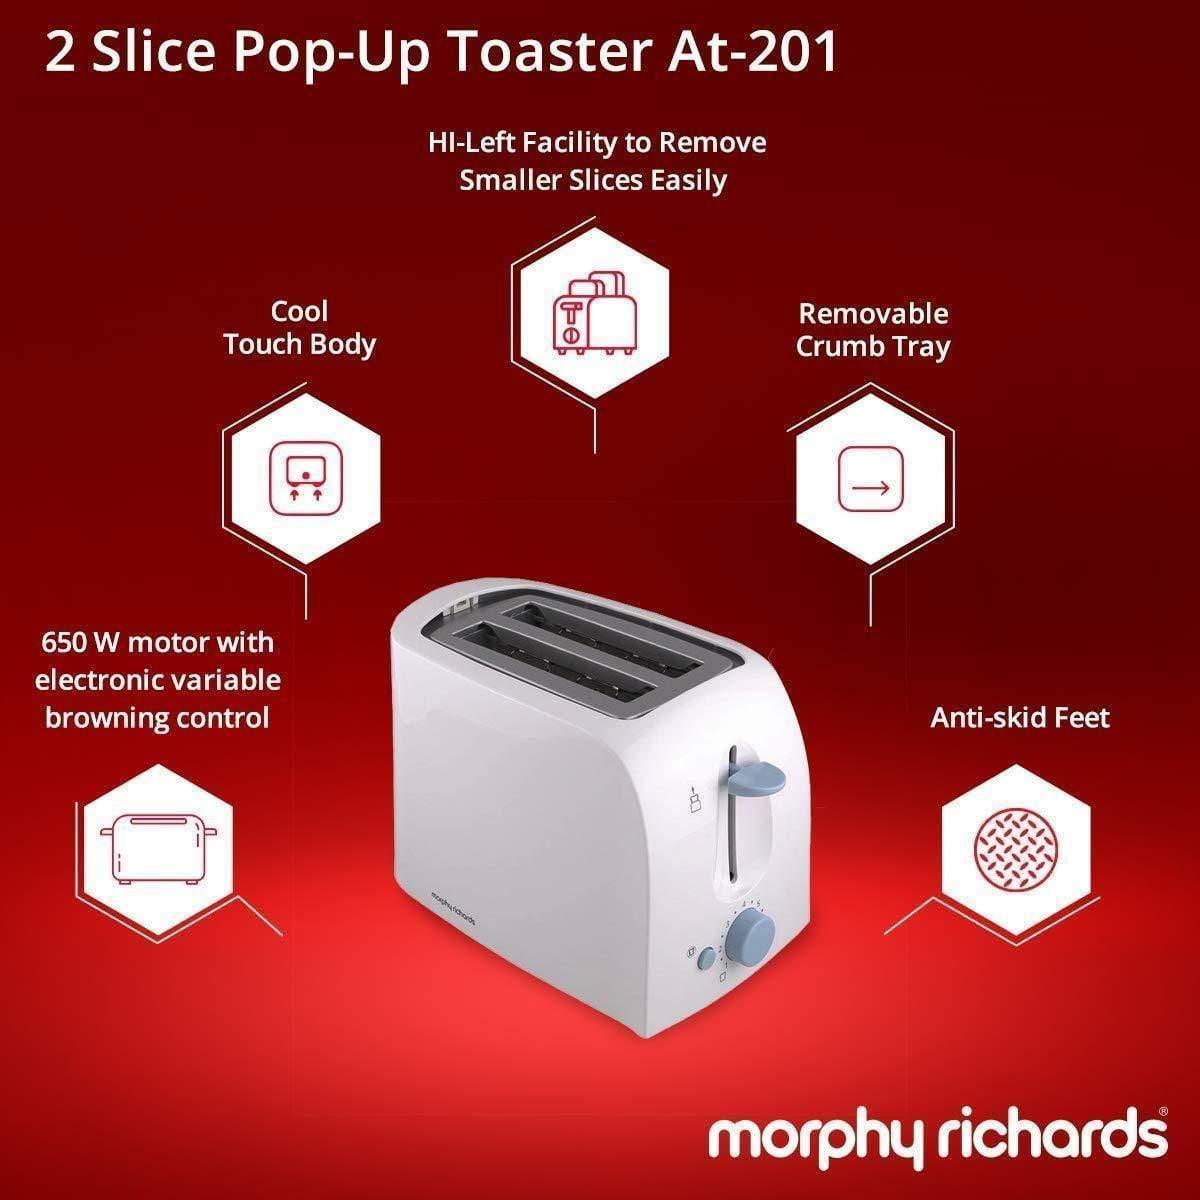 MORPHY RICHARDS 2 SLICE TOASTER AT-201-Home & Kitchen Appliances-dealsplant